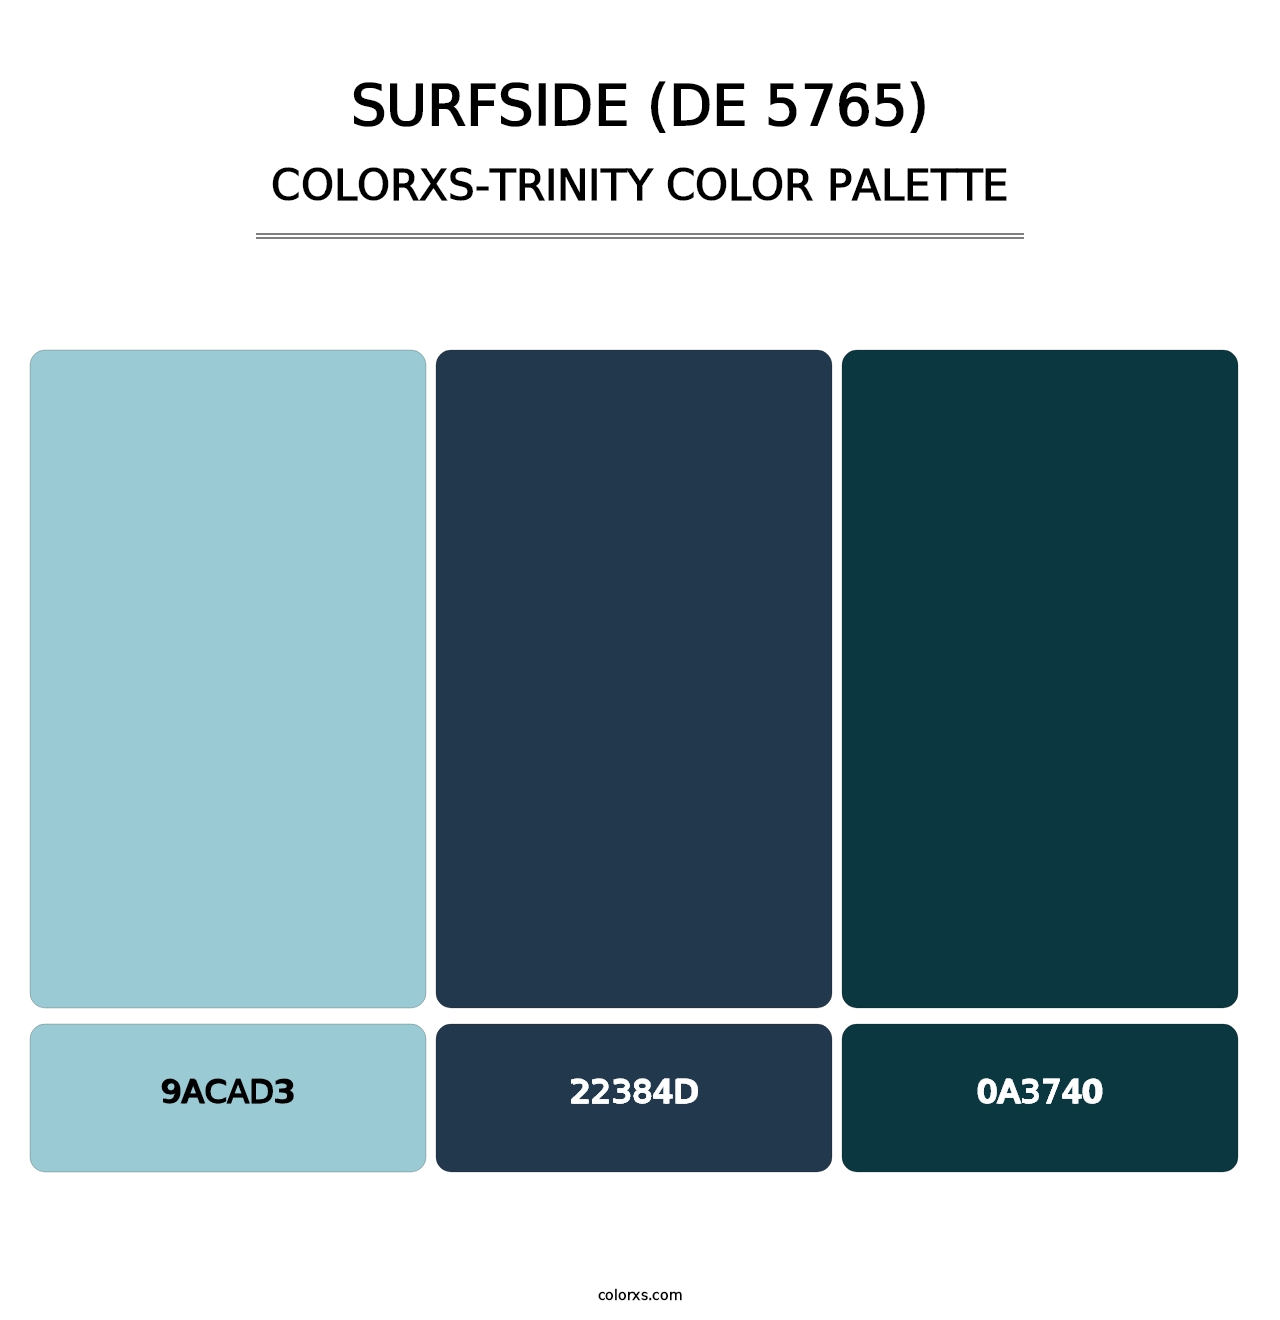 Surfside (DE 5765) - Colorxs Trinity Palette